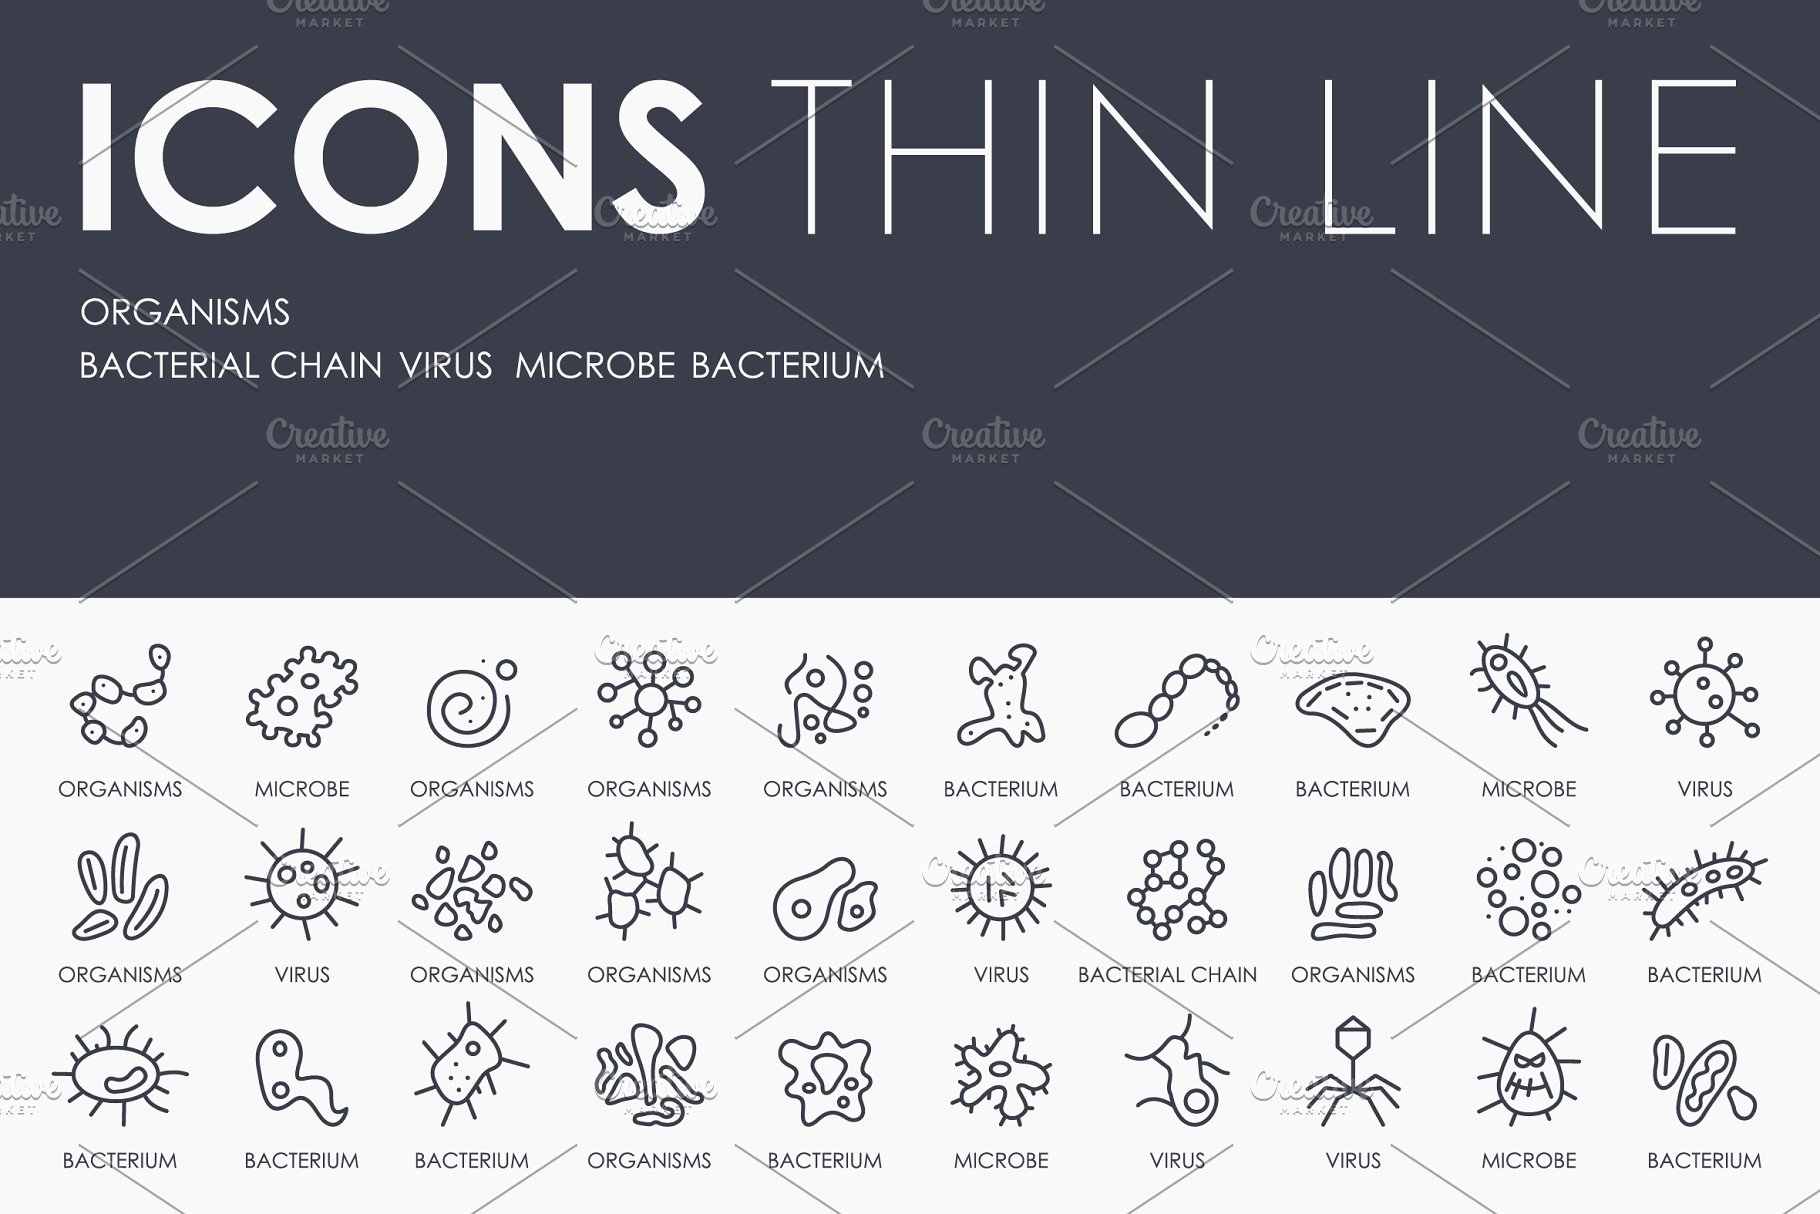 生物细菌矢量图标素材 Organisms thinline